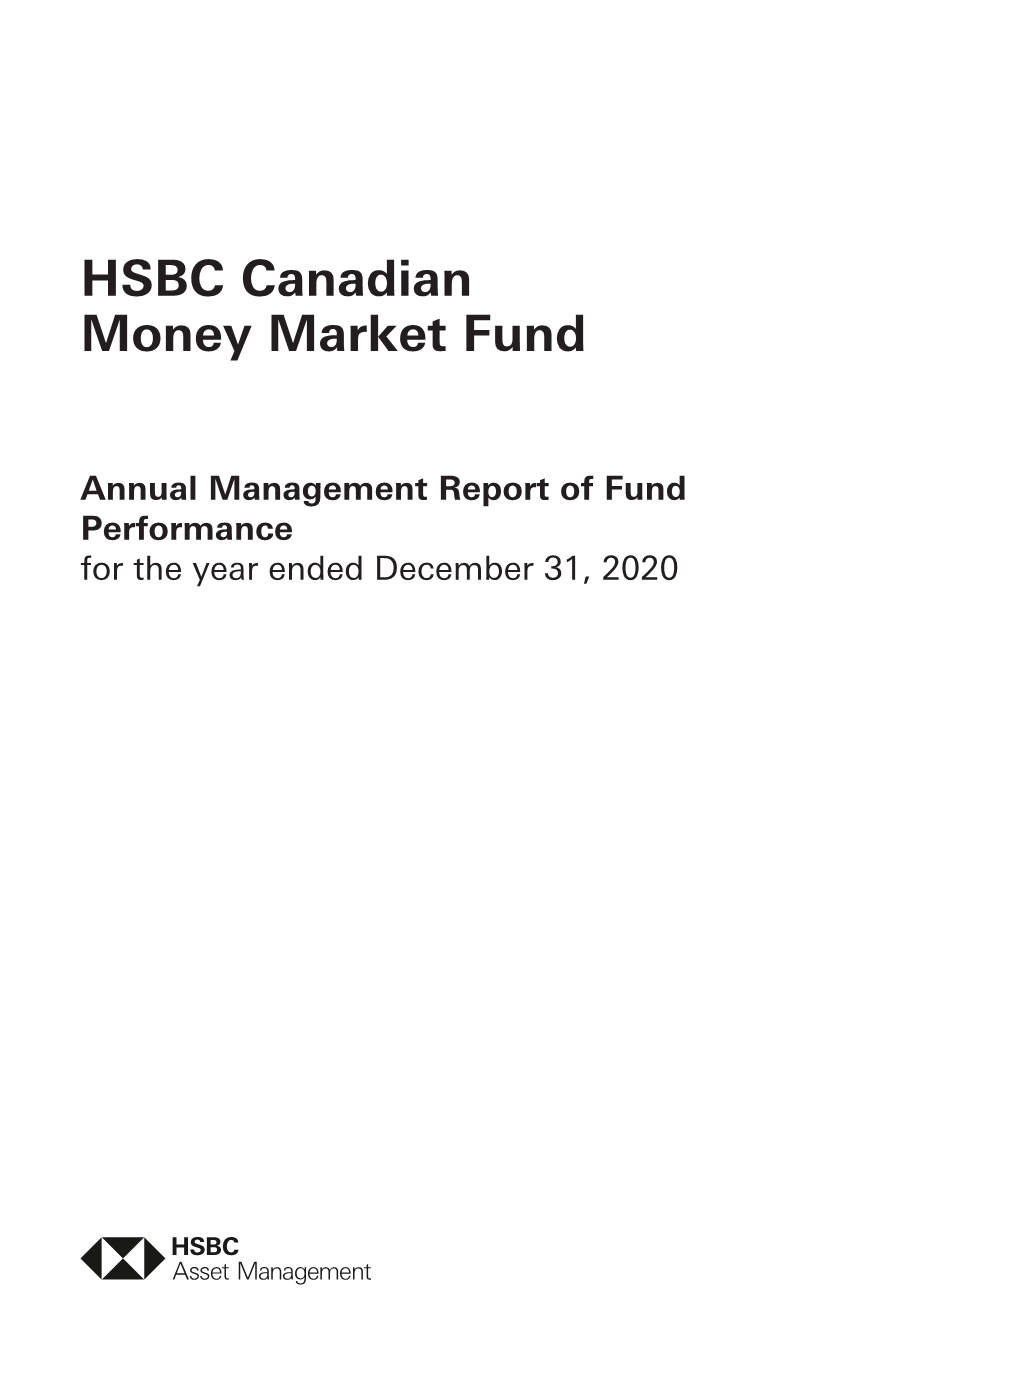 HSBC Canadian Money Market Fund